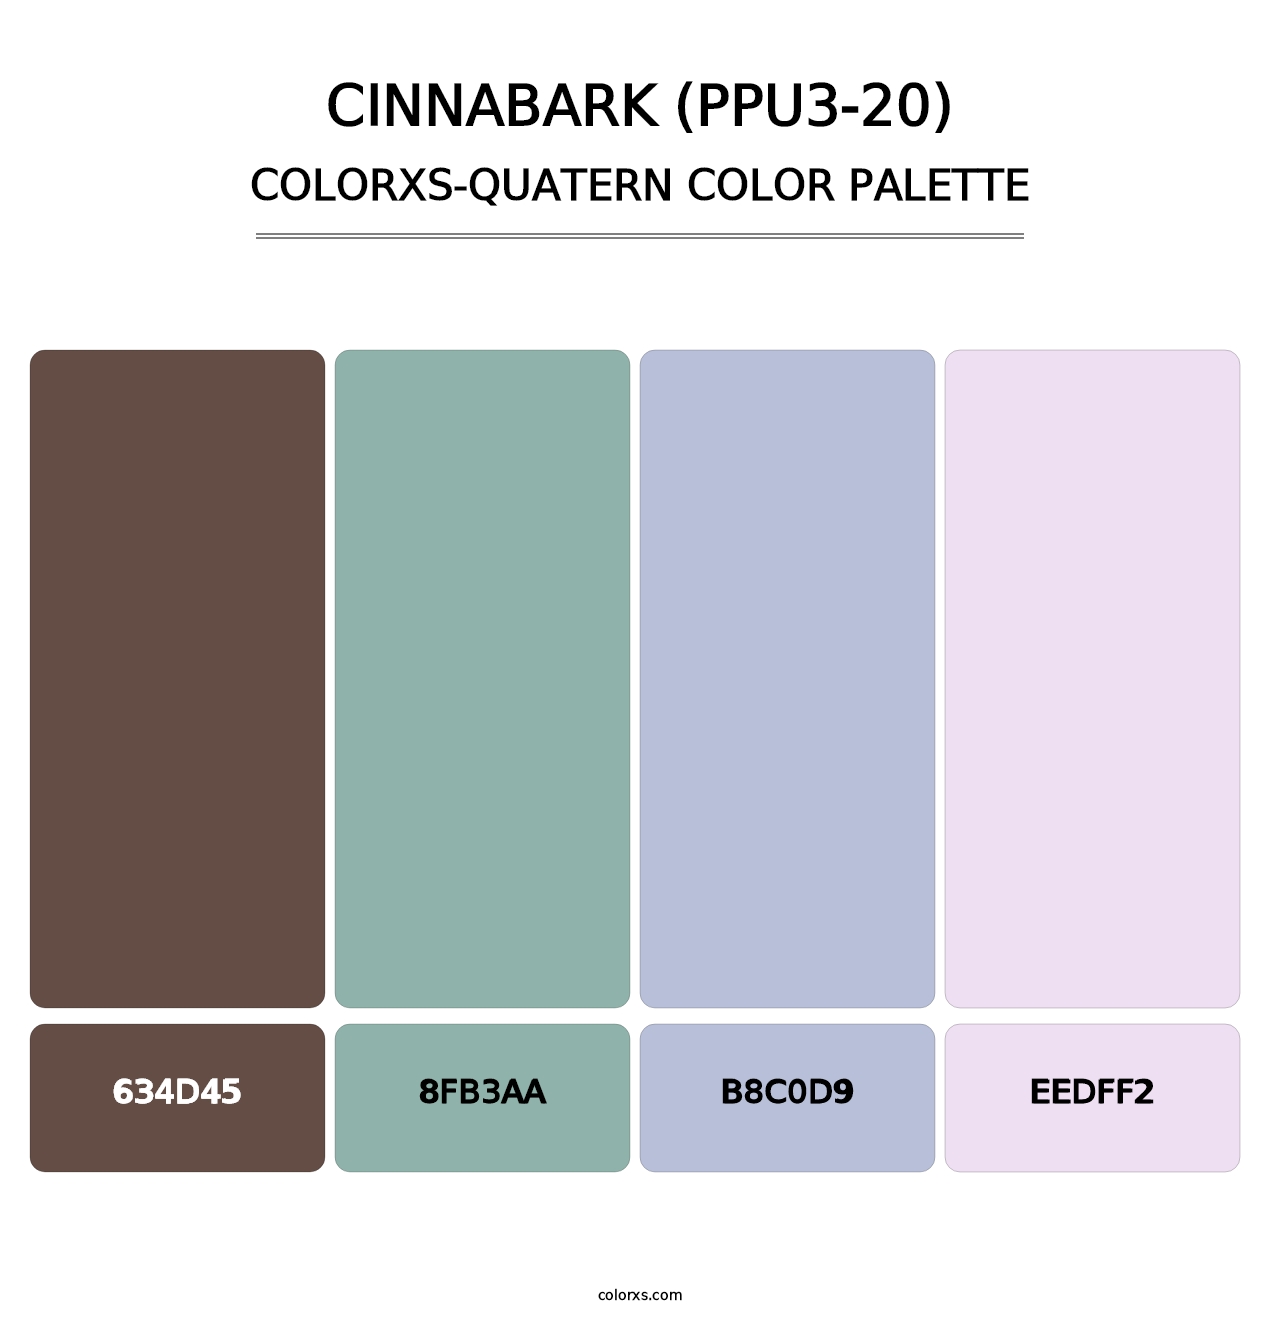 Cinnabark (PPU3-20) - Colorxs Quatern Palette